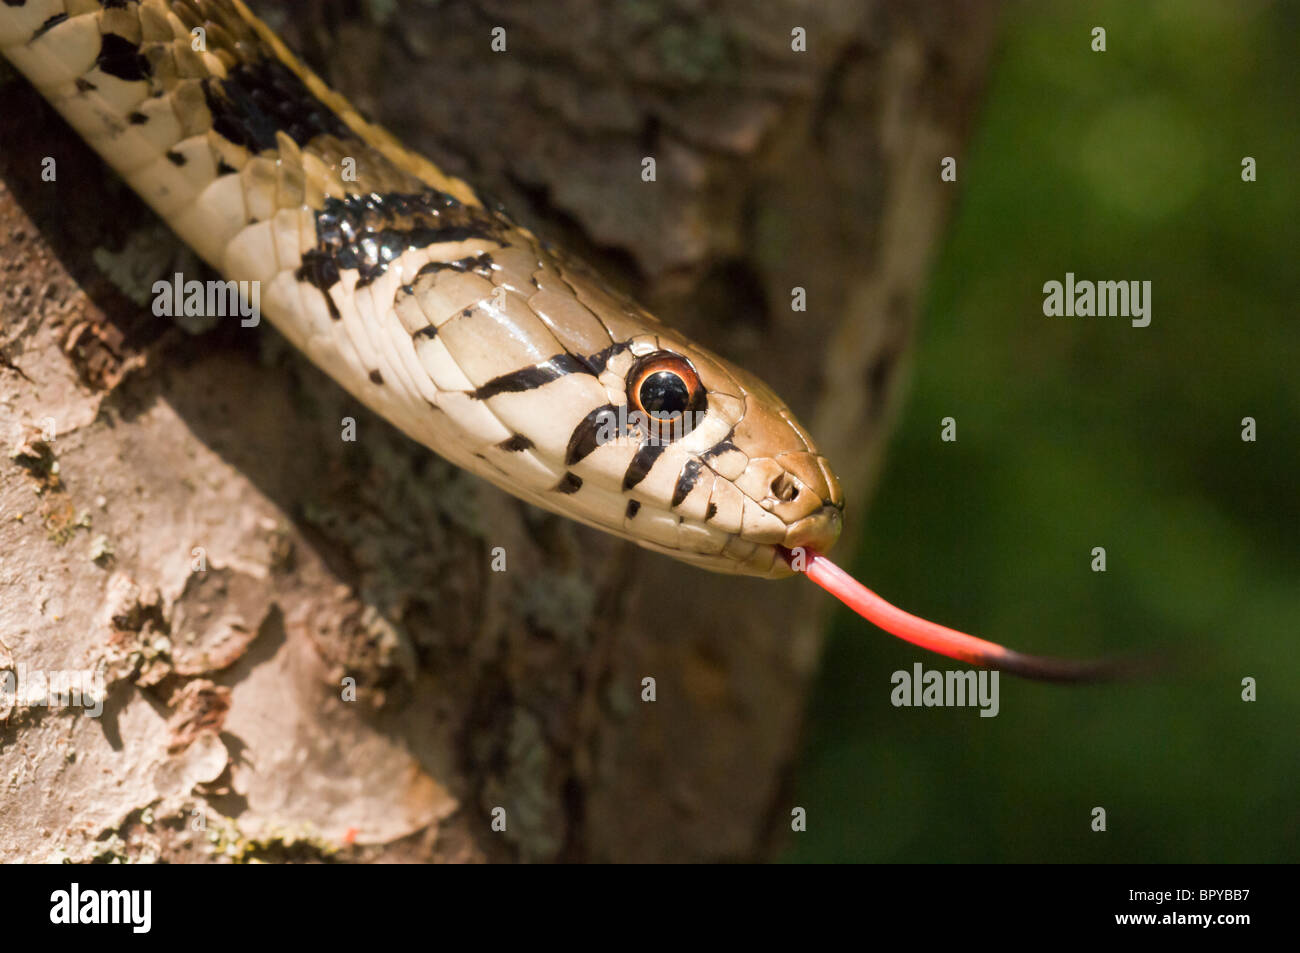 Giarrettiera a scacchi snake, Thamnophis marcianus, nativo di meridionale degli Stati Uniti Foto Stock